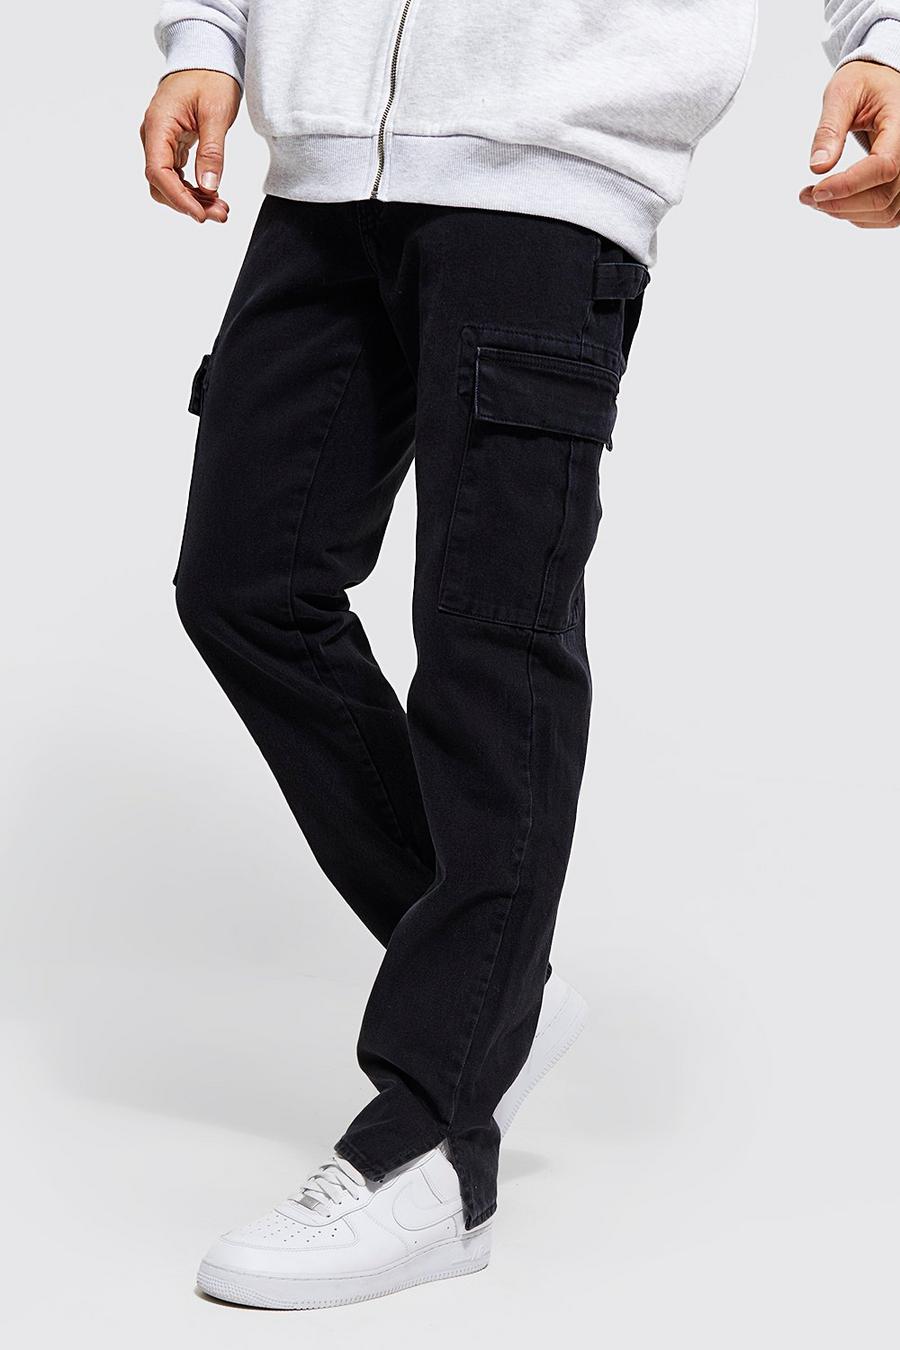 שטיפה כהה azzurro ג'ינס קרגו בגזרה ישרה עם רוכסן בצד ומכפלת לגברים גבוהים